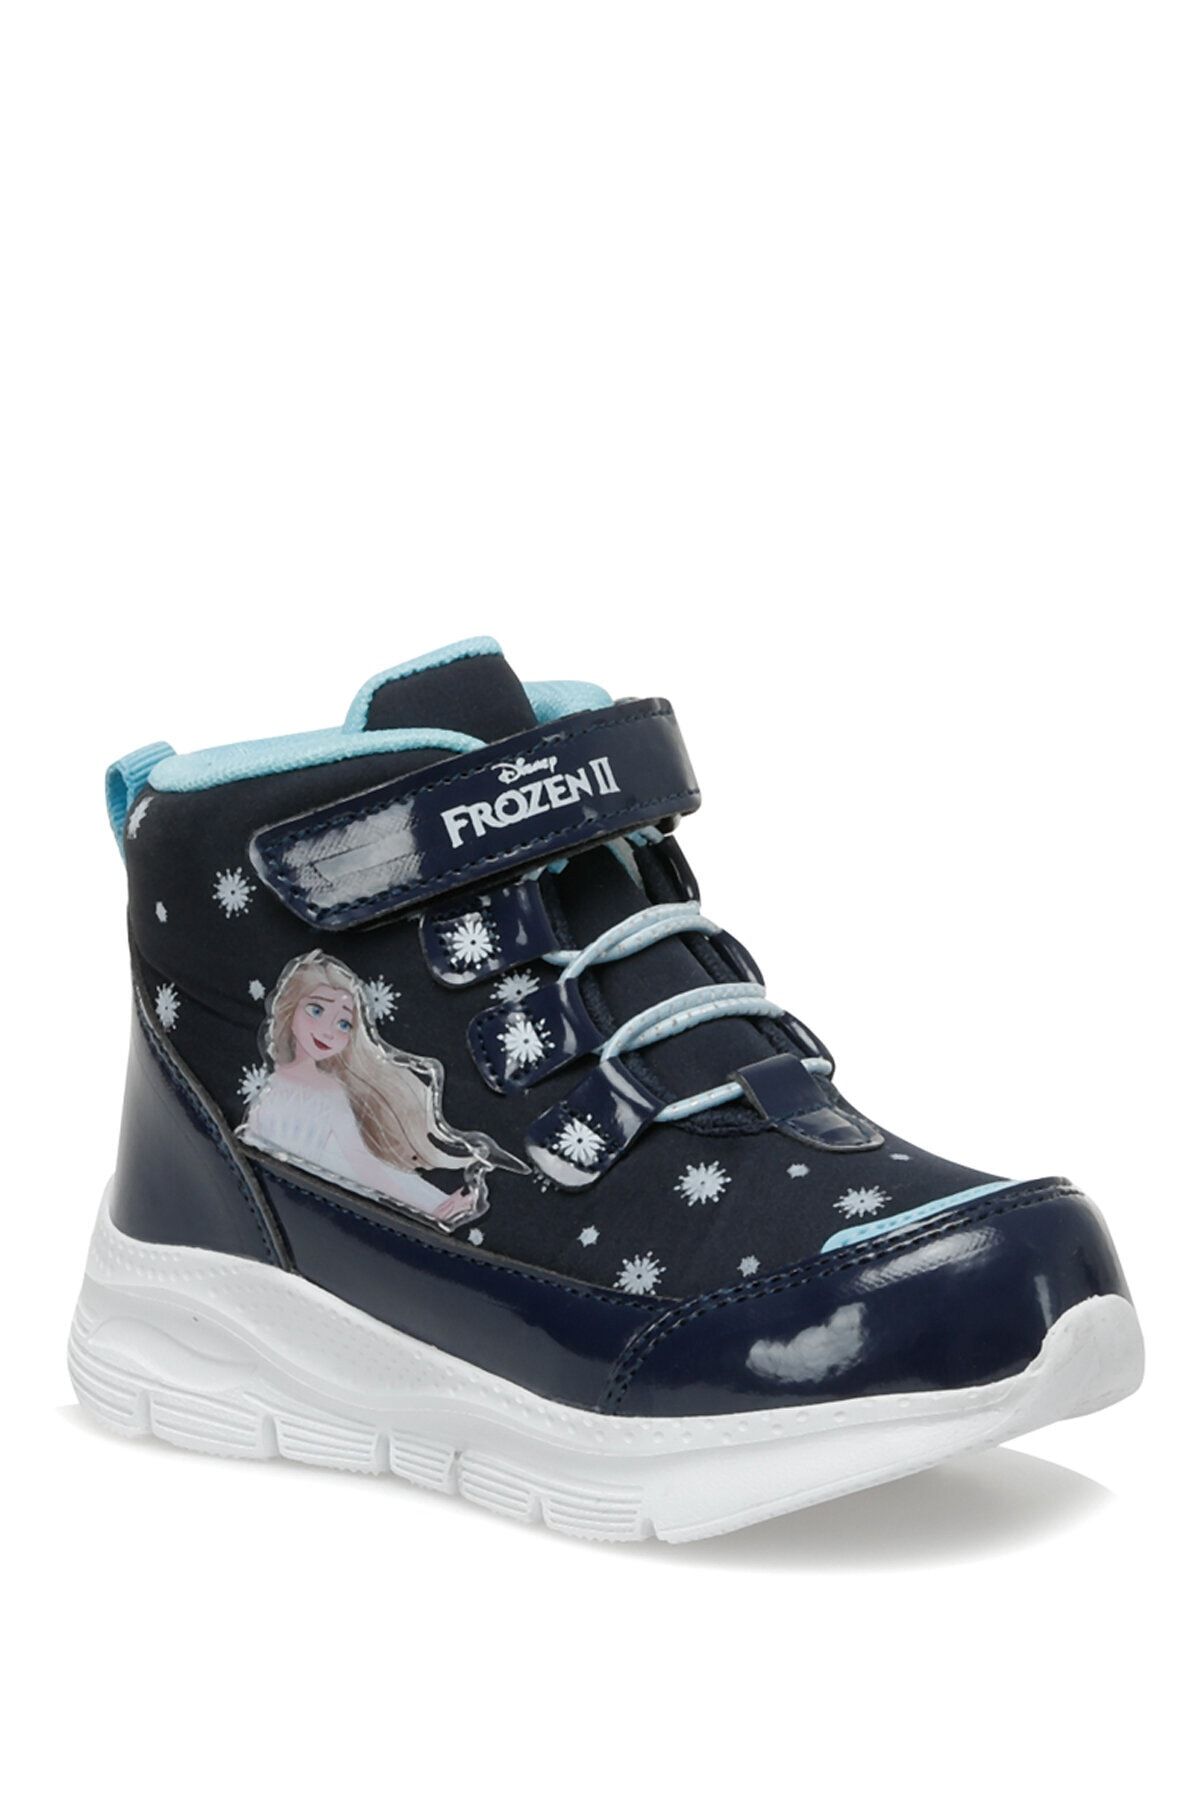 Frozen Sefriy.p2pr Lacivert Kız Çocuk Spor Ayakkabı